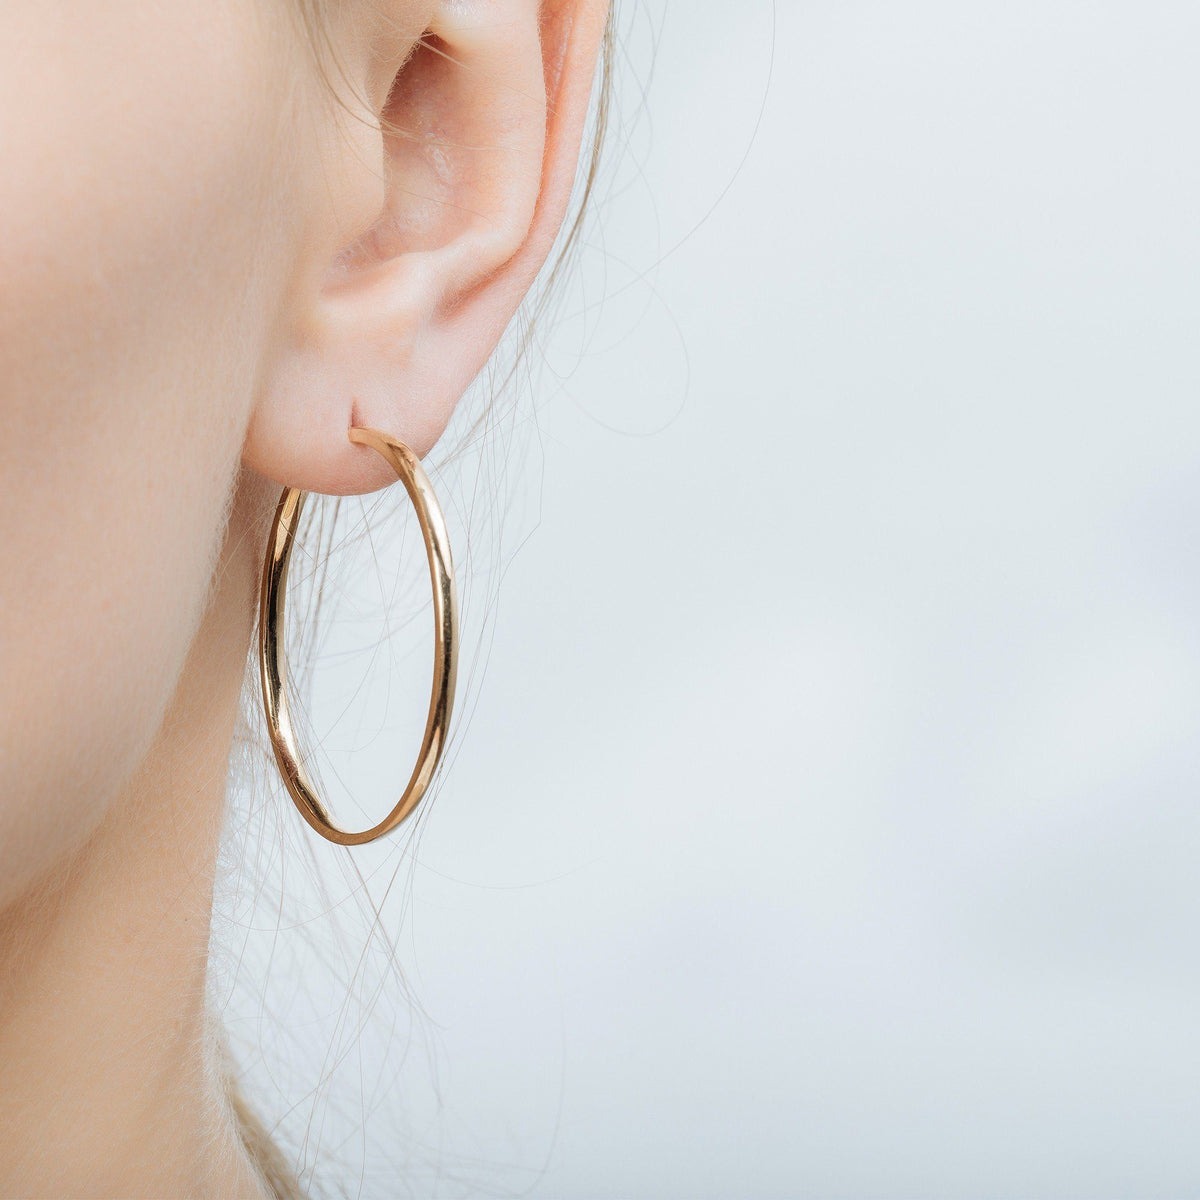 tophatter-hoop-earrings-blog